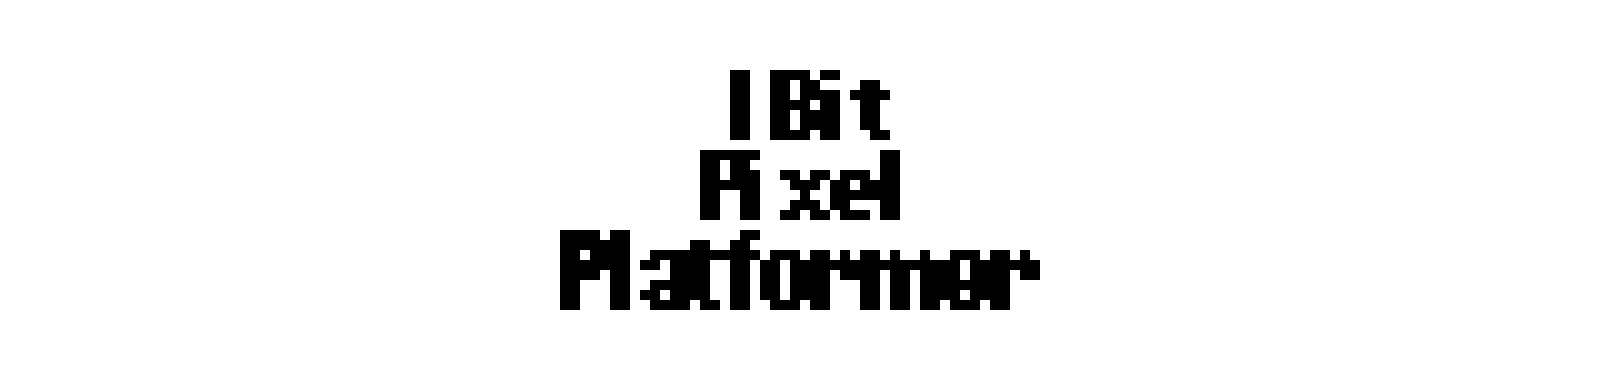 Free 1Bit Pixel Platformer - Asset Pack